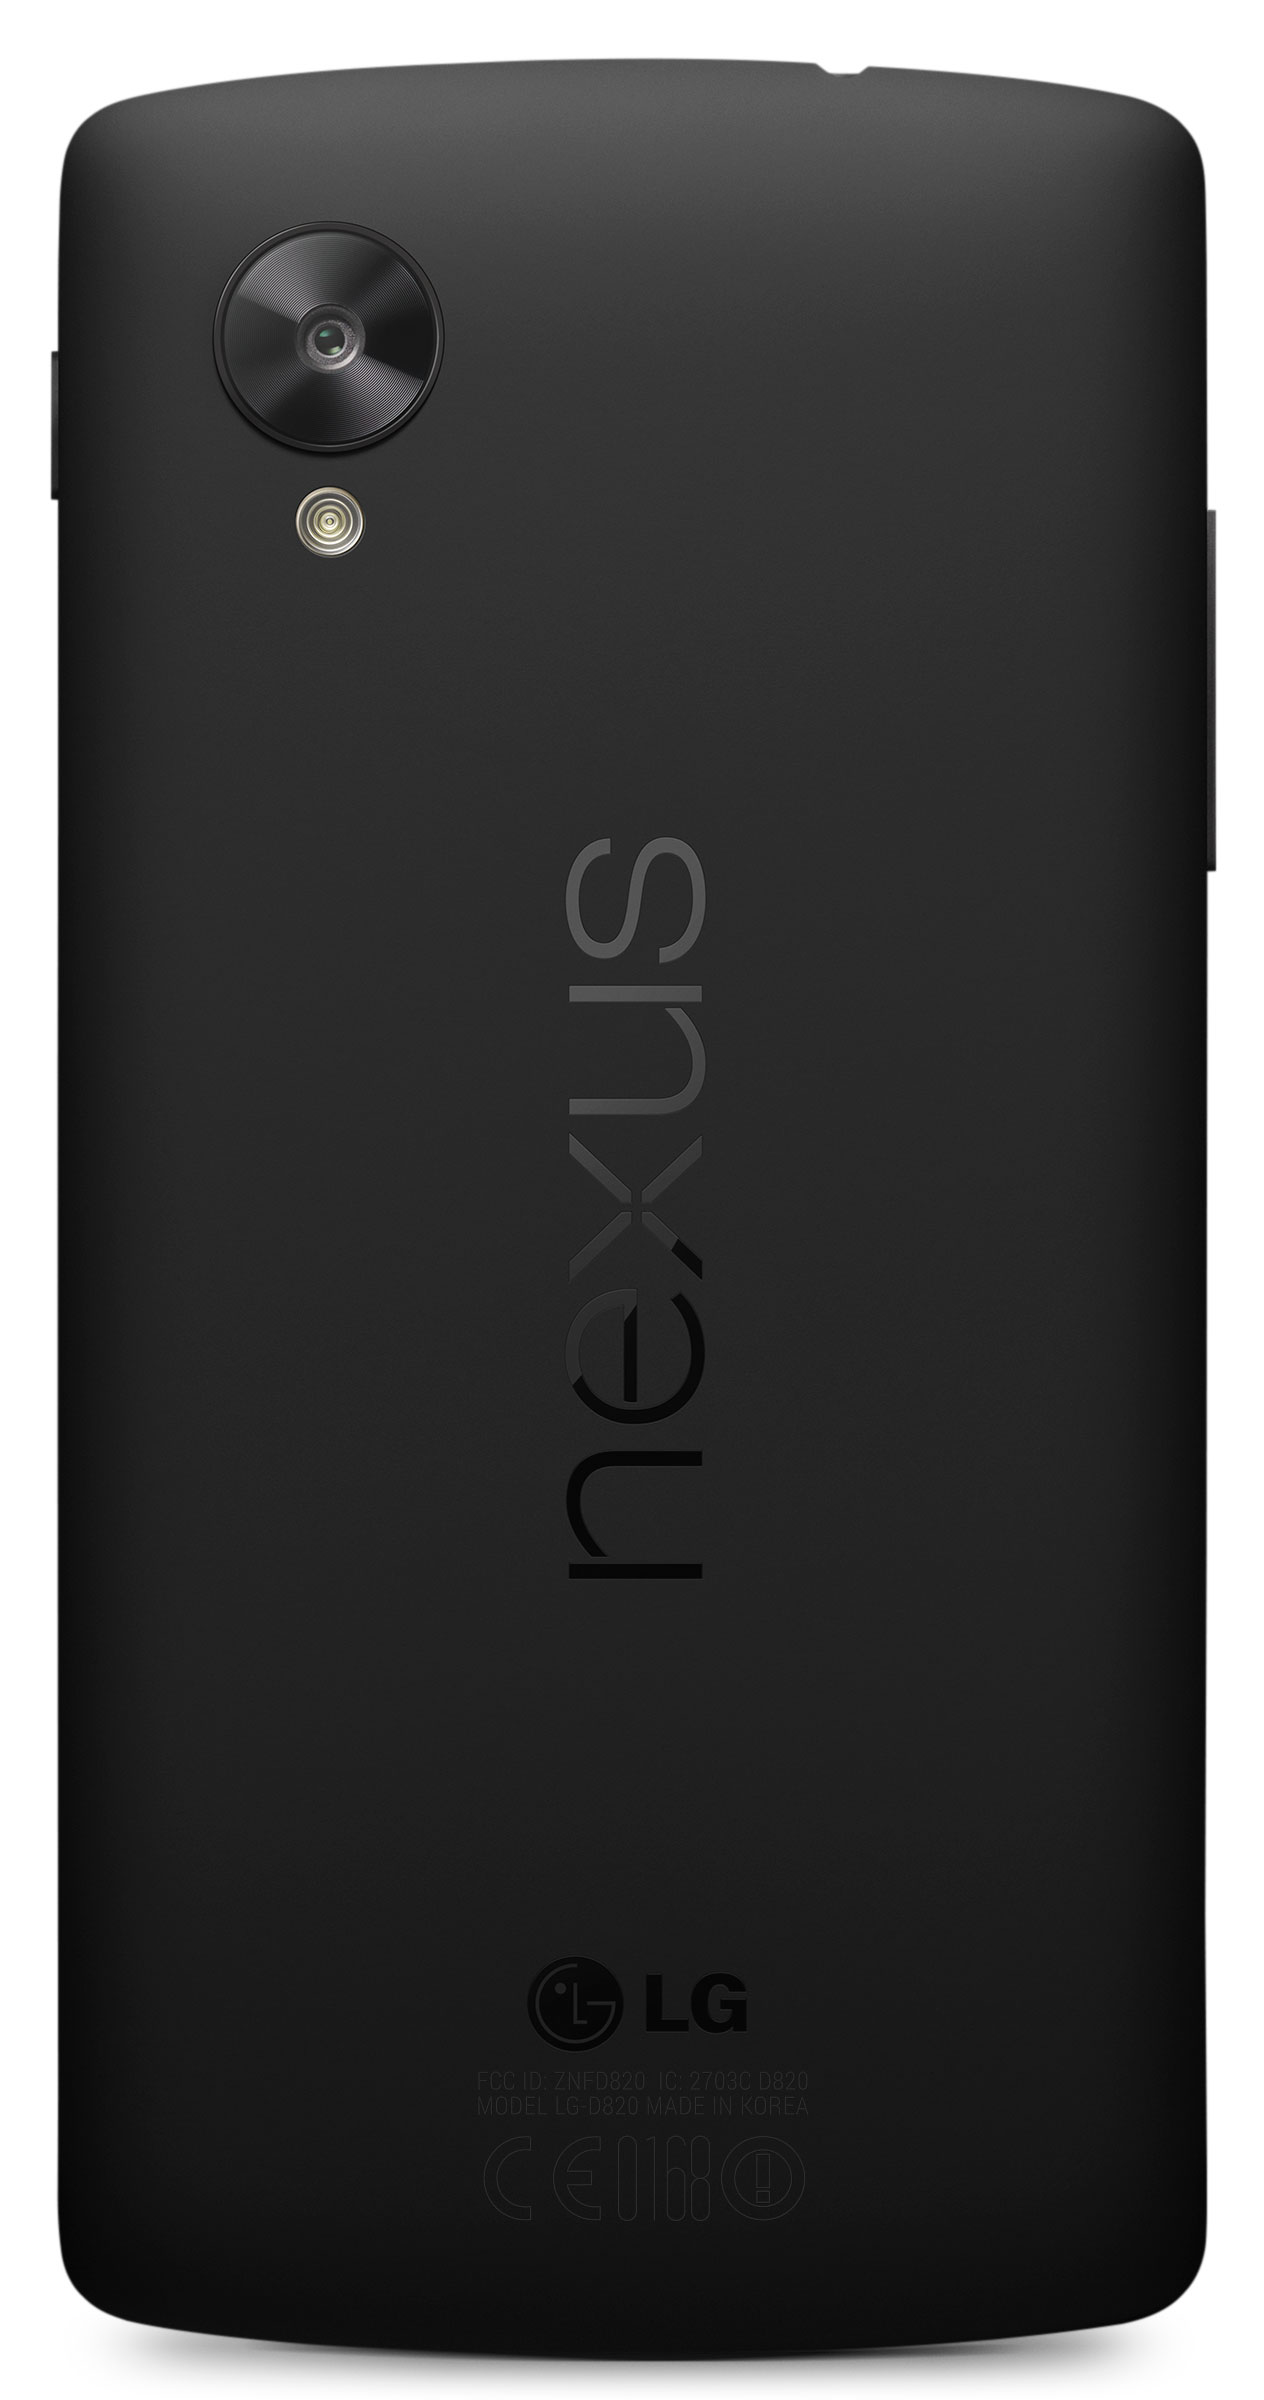 Immagine pubblicata in relazione al seguente contenuto: Google lancia lo smartphone Nexus 5 e l'OS Android 4.4 KitKat | Nome immagine: news20294_Google-Nexus-5_7.jpg